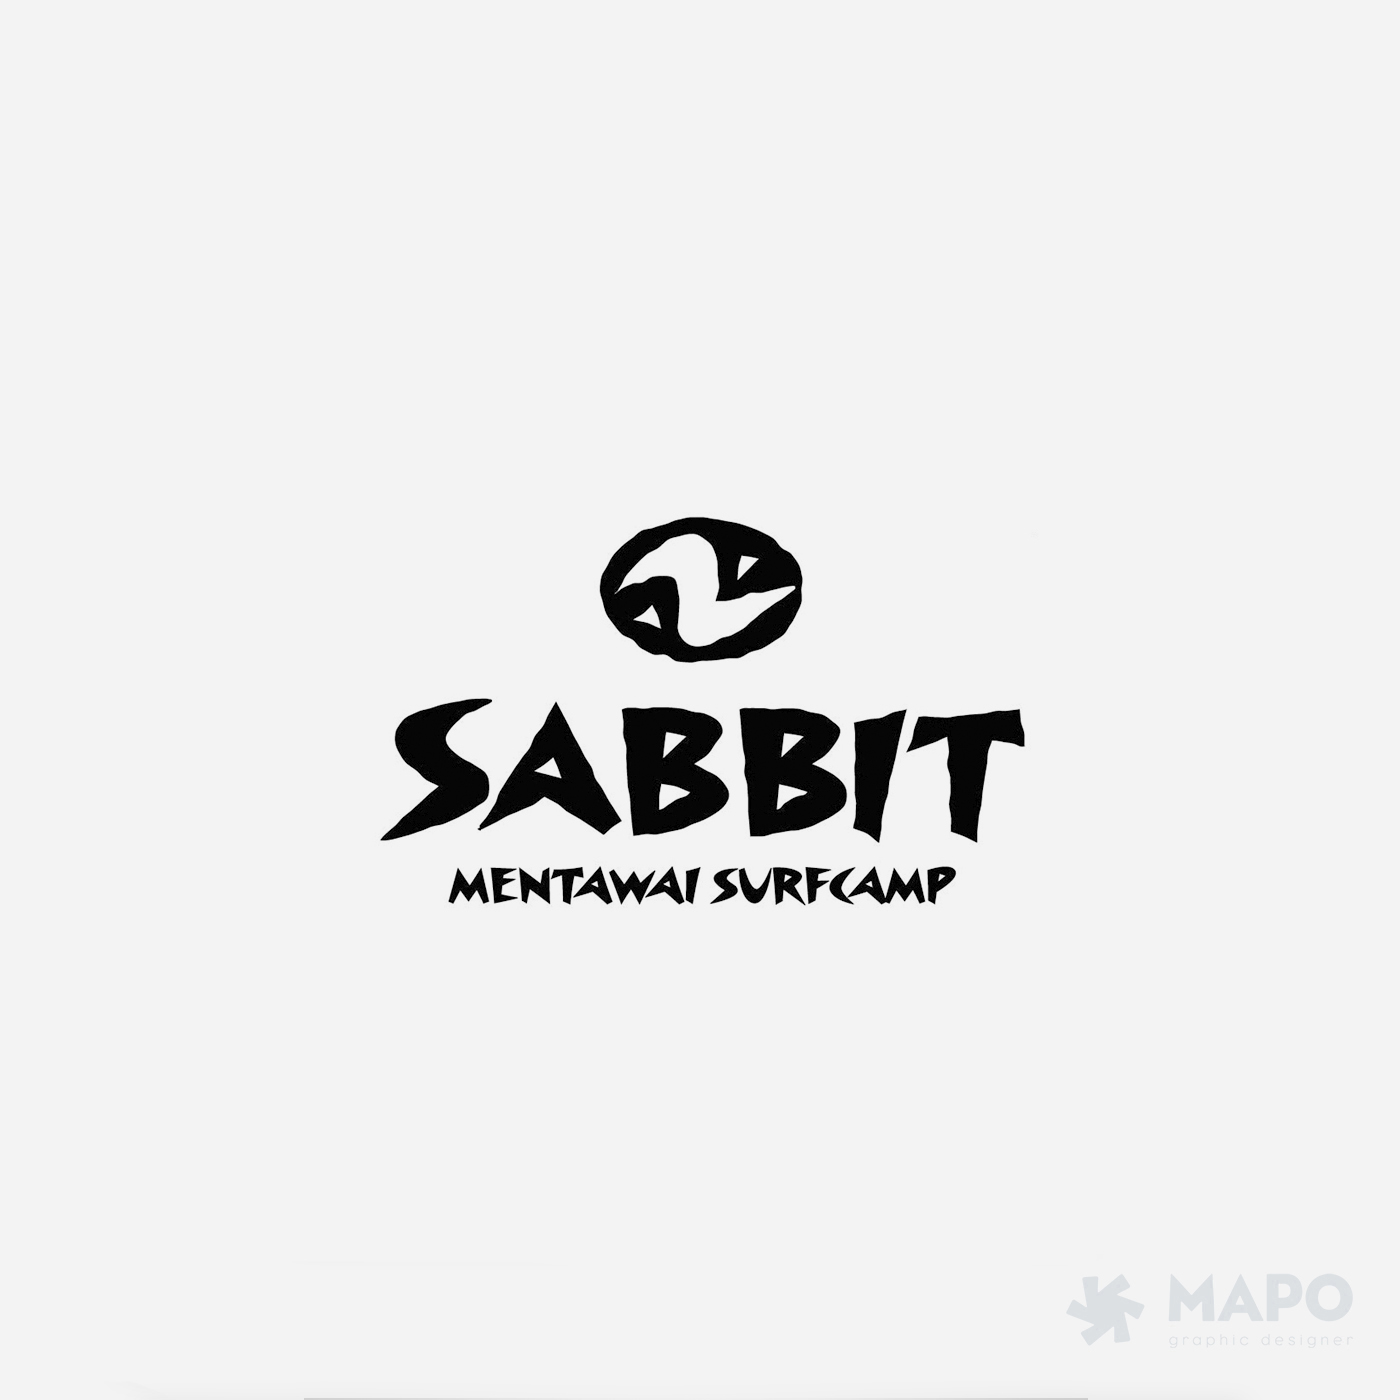 Sabbit Mentawai Surfcamp